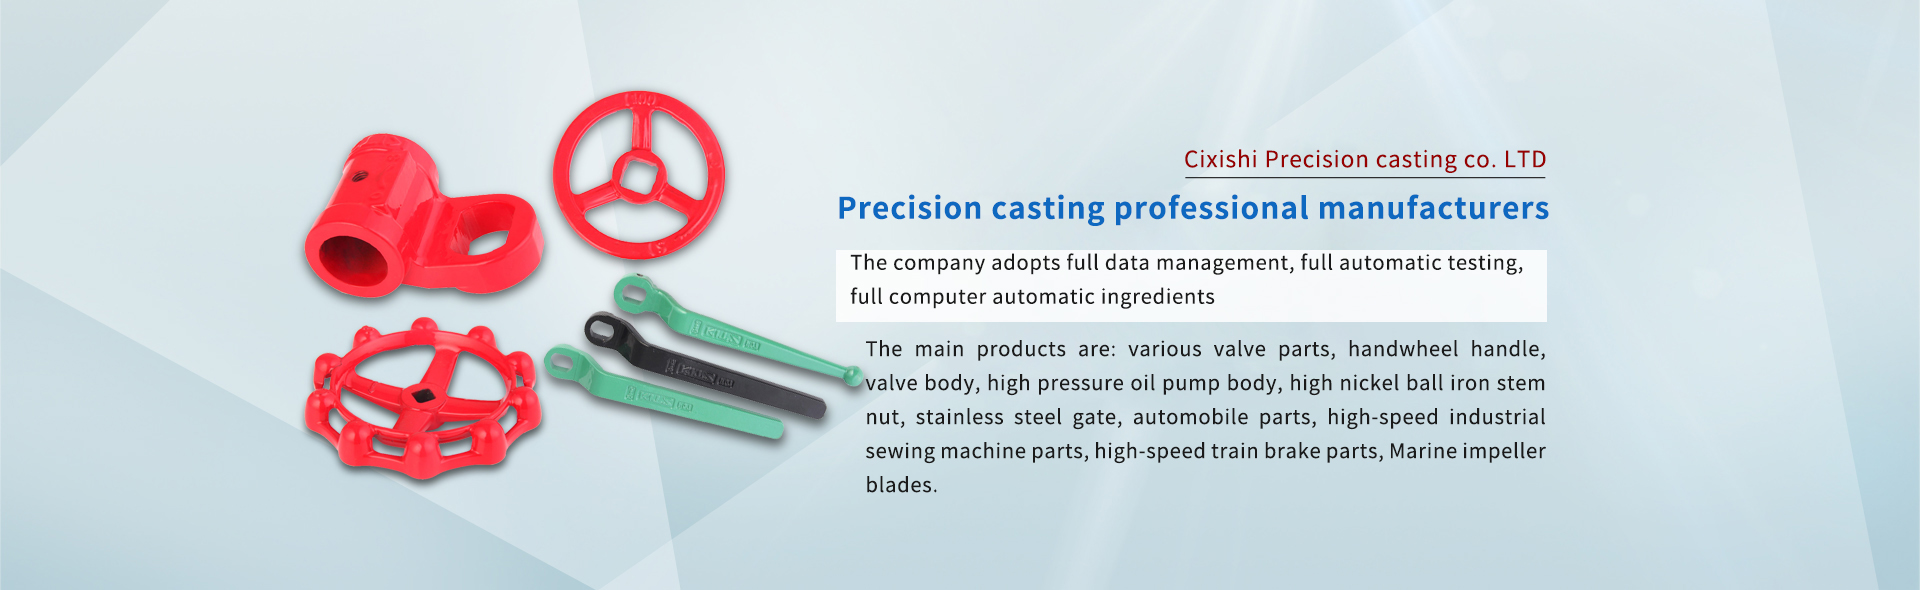 Precision casting